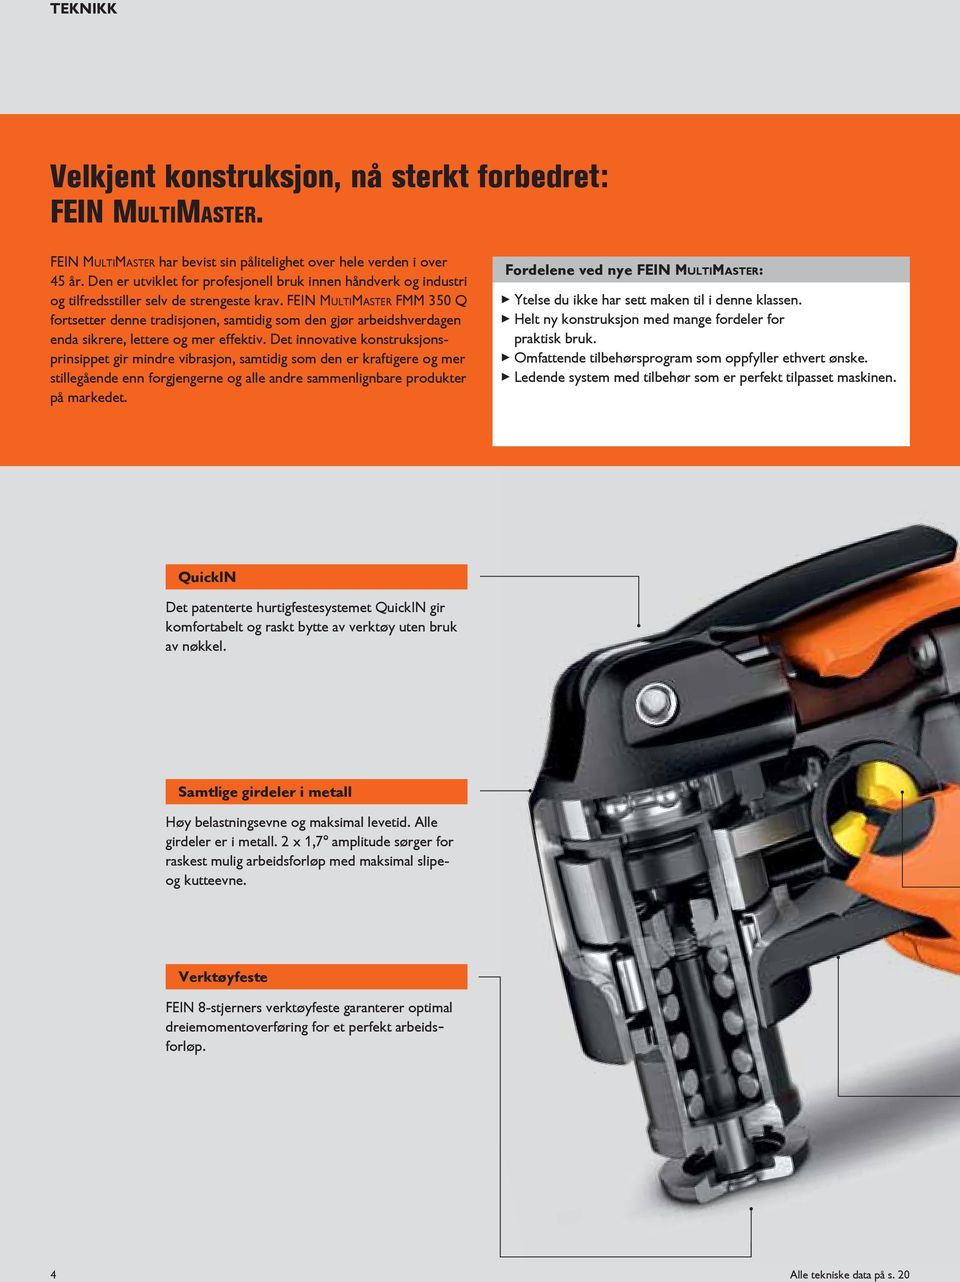 FEIN MultiMaster FMM 350 Q fortsetter denne tradisjonen, samtidig som den gjør arbeidshverdagen enda sikrere, lettere og mer effektiv.